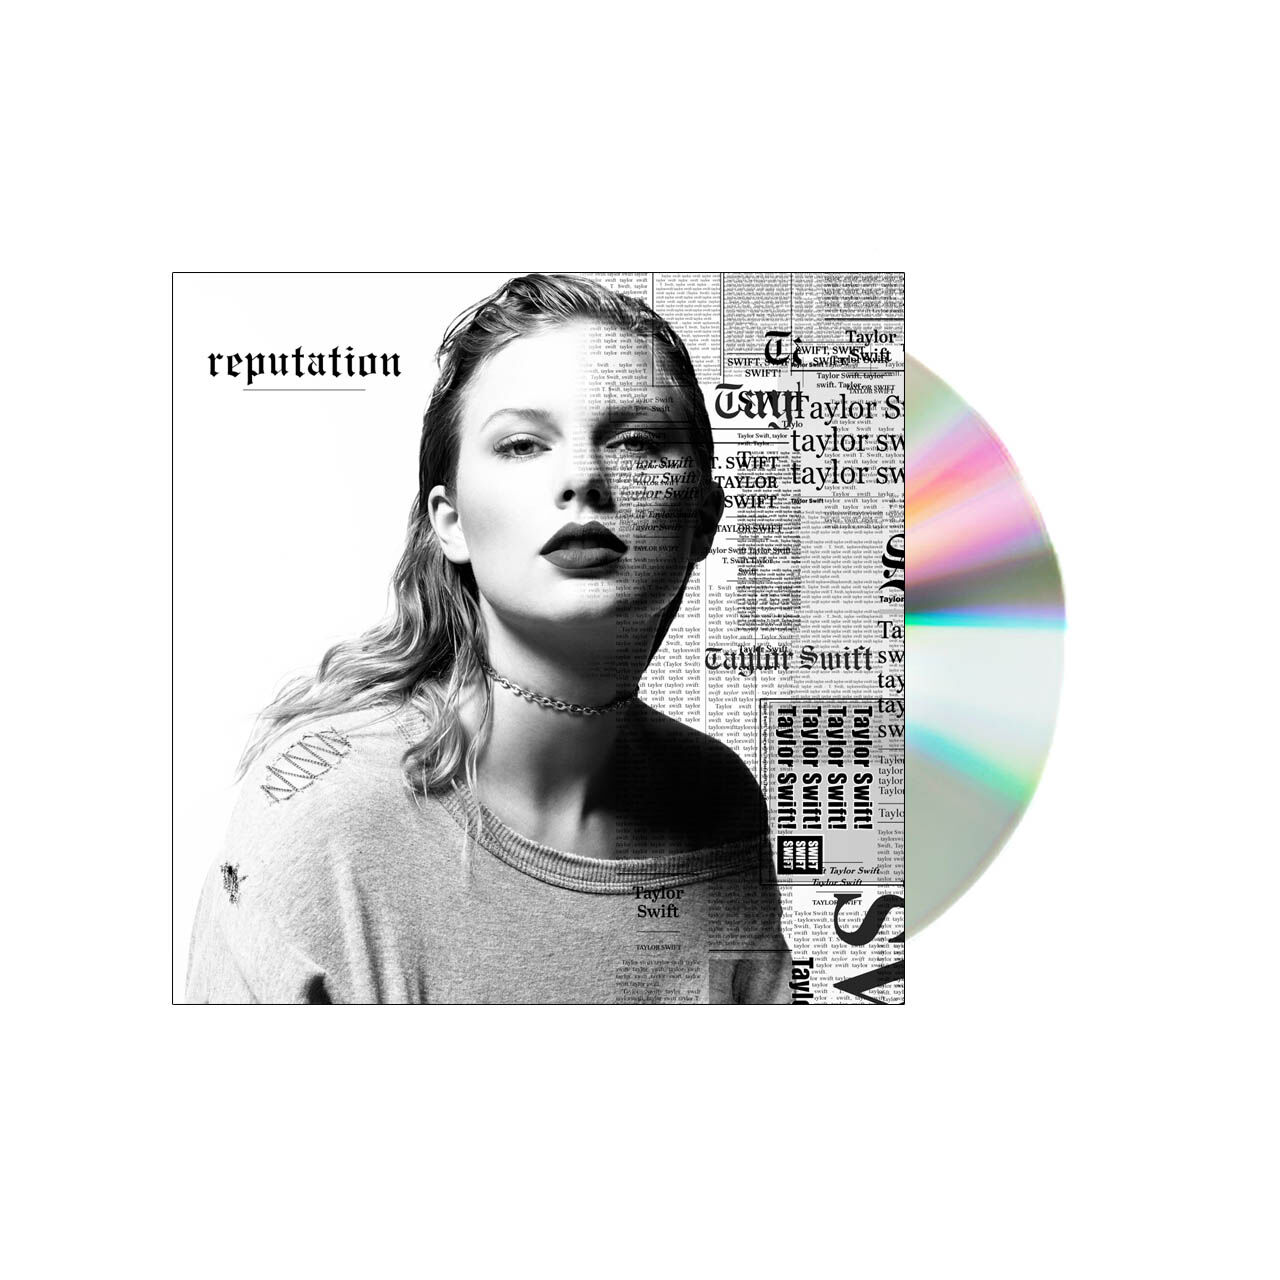 https://img.thetedellis.com/v7/thetedellis.com/wp-content/uploads/2020/02/Taylor-Swift-reputation-CD-1.jpg?org_if_sml=0